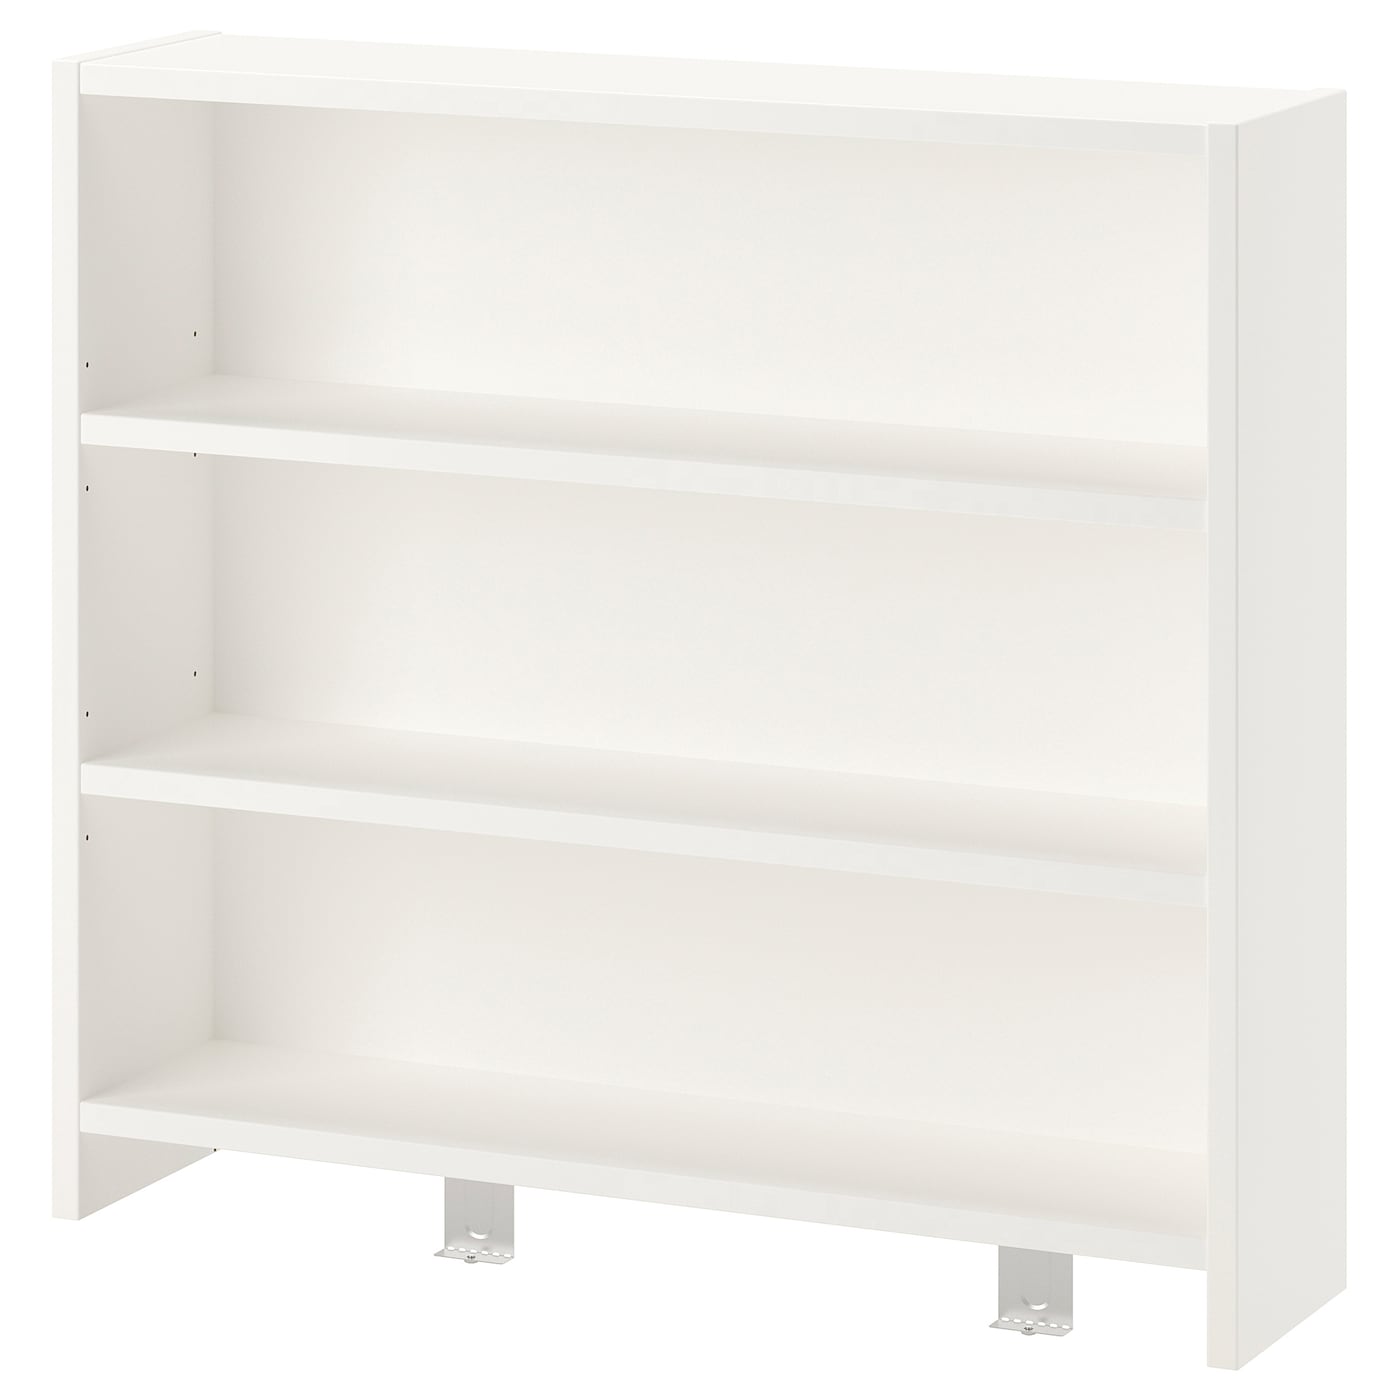 Полка для письменного стола детского - IKEA PÅHL/PAHL/ПОЛЬ ИКЕА, 64x60 см, белый